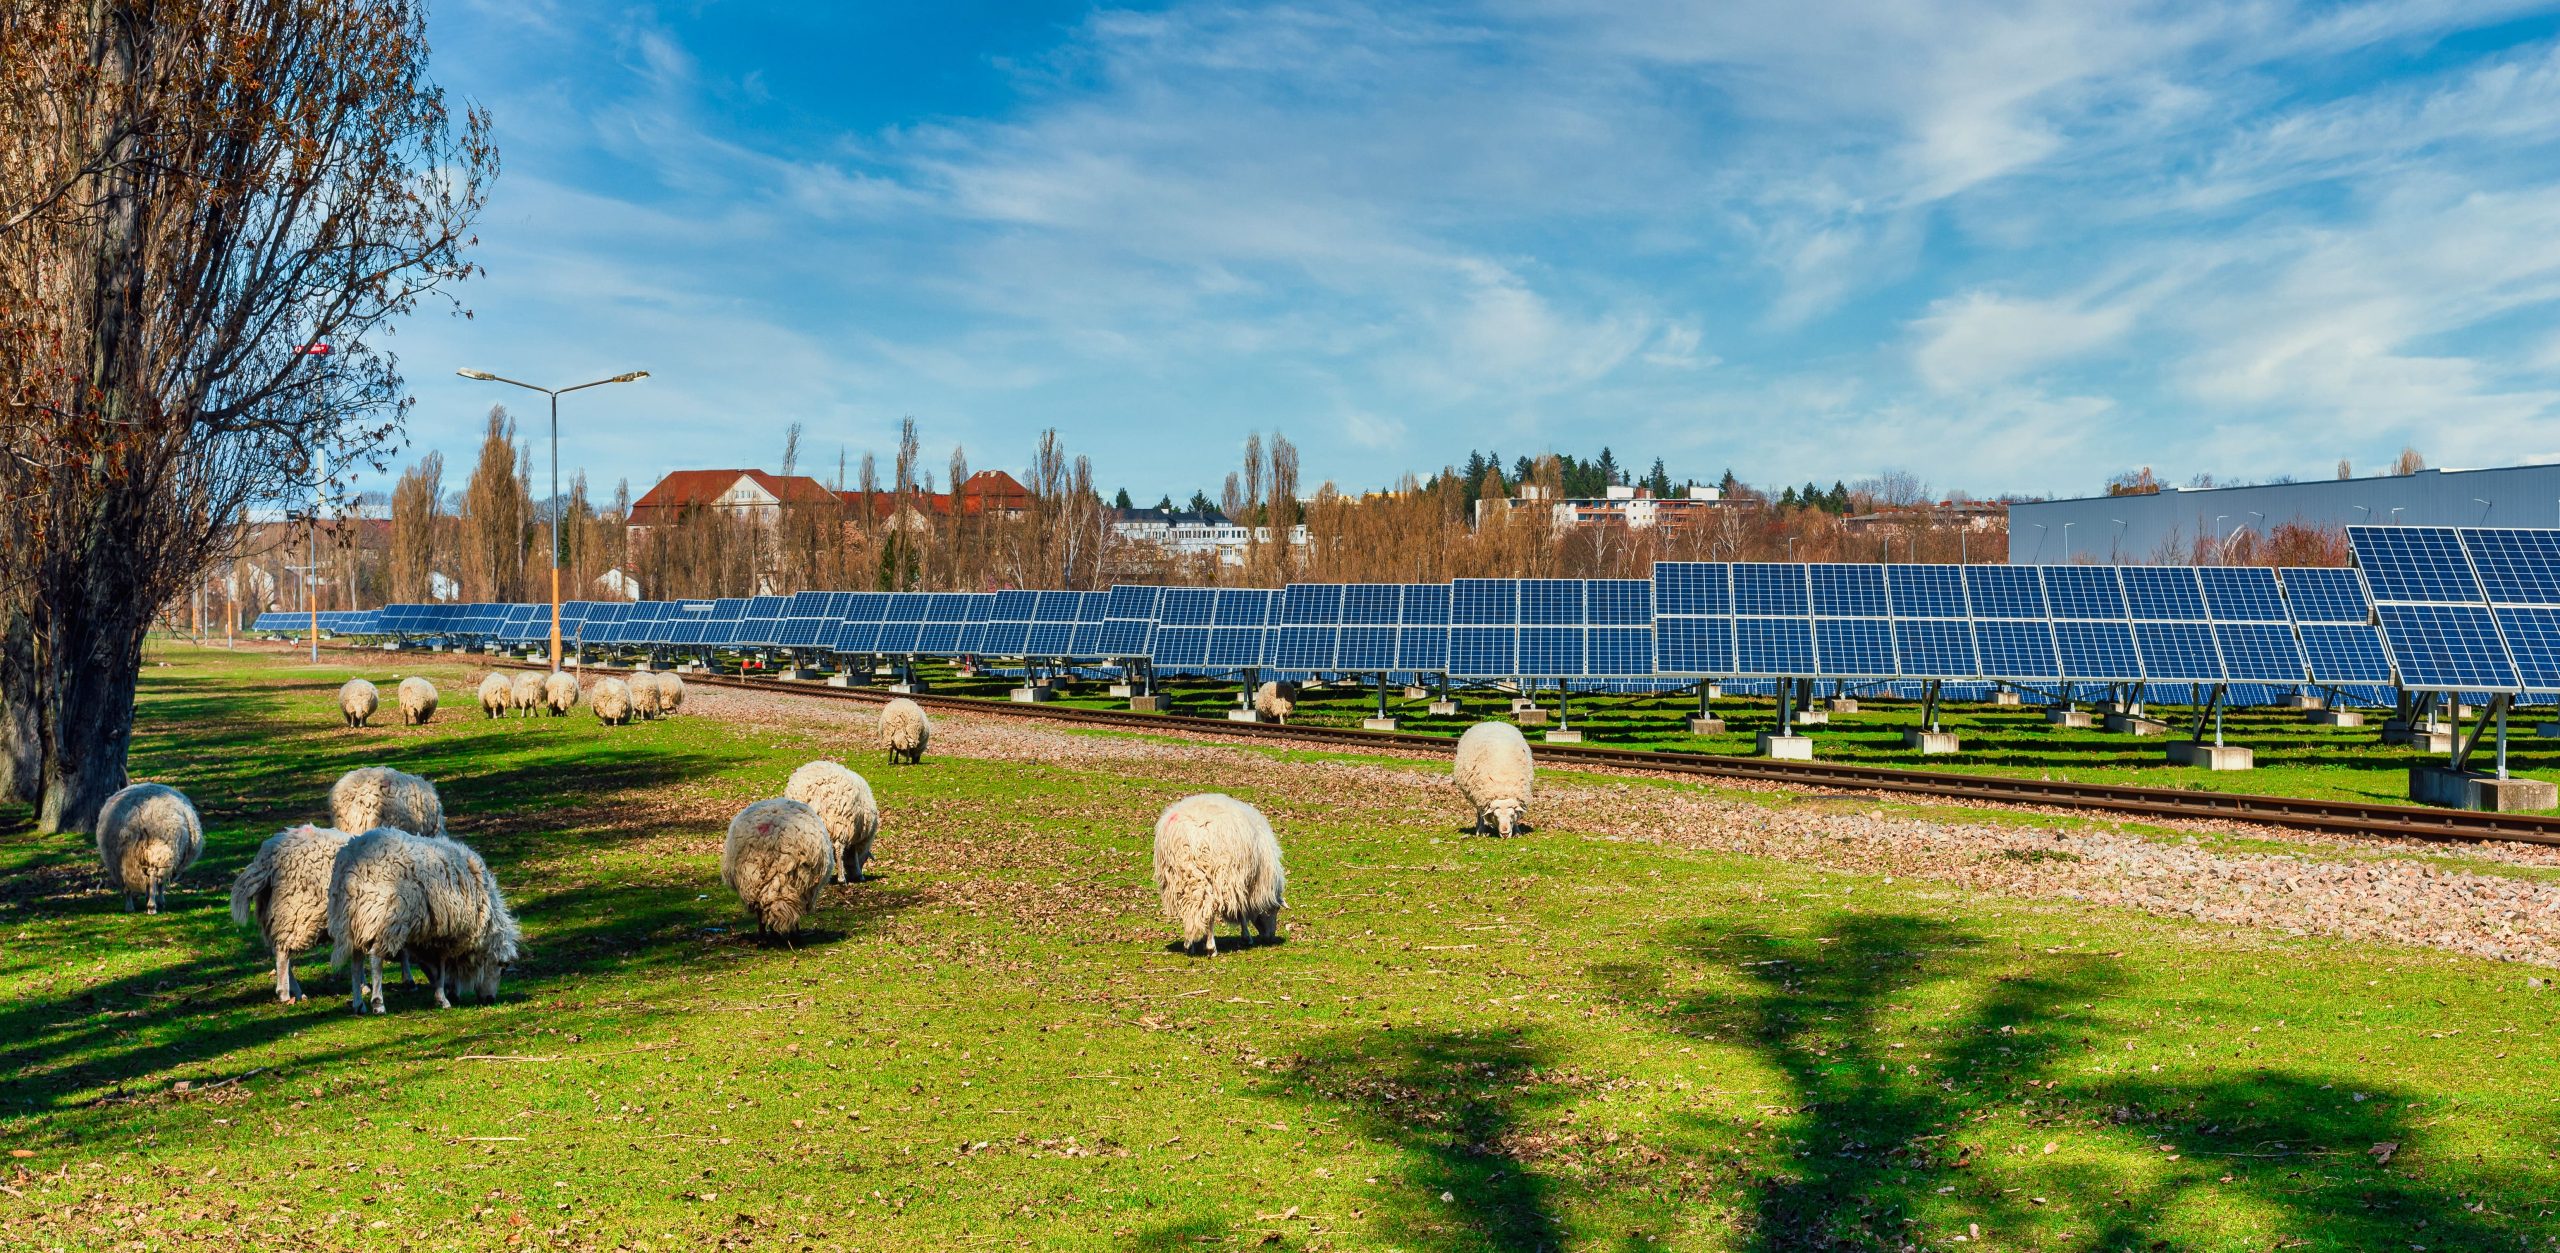 UK’s Largest Community-Owned Solar Farm Plans Backed